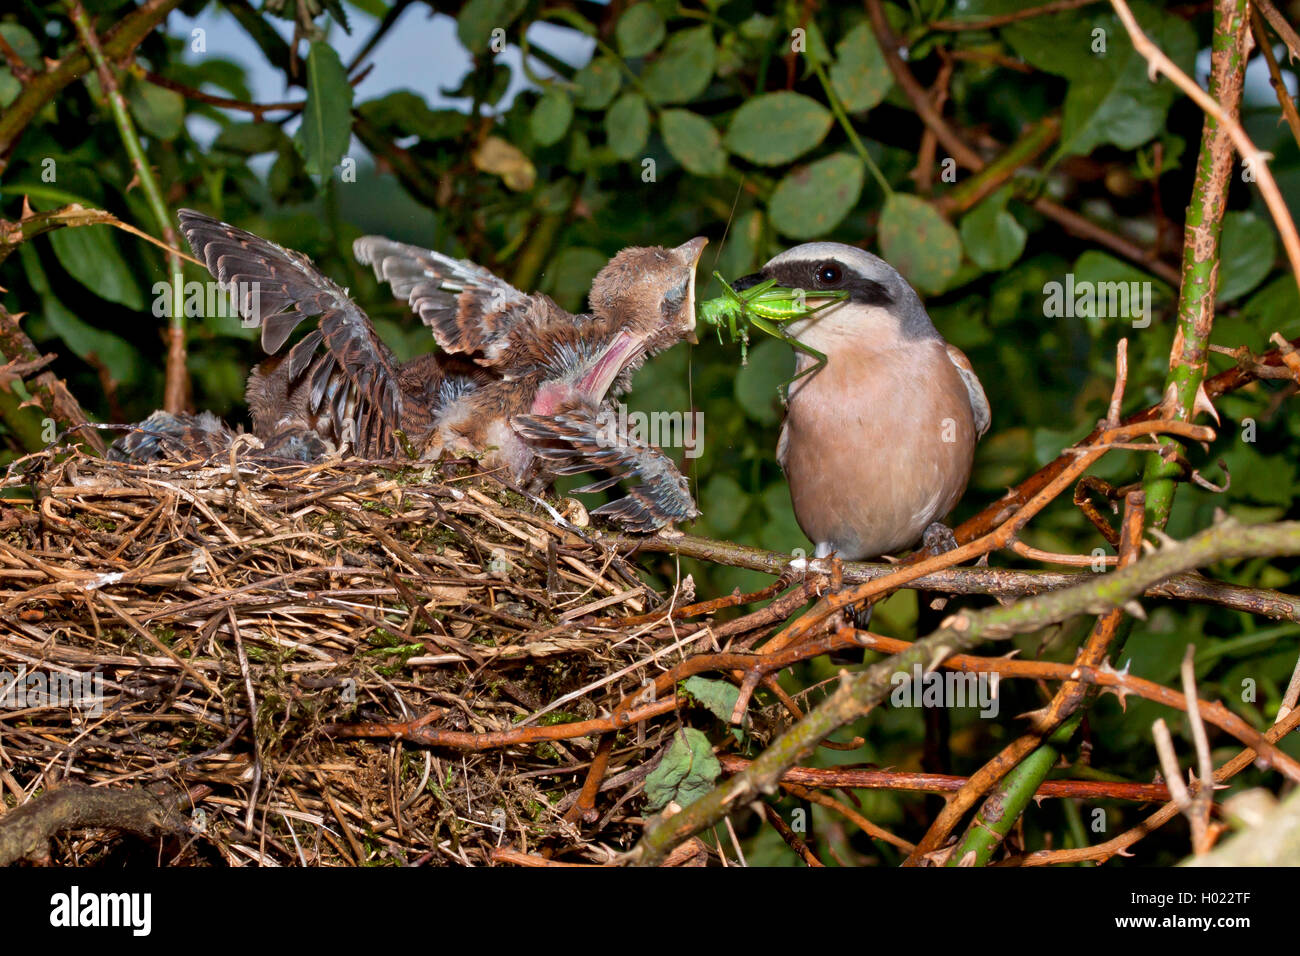 Red-backed shrike (Lanius collurio), maschio alimentazione di accattonaggio bambino uccello in un nido, Germania Foto Stock